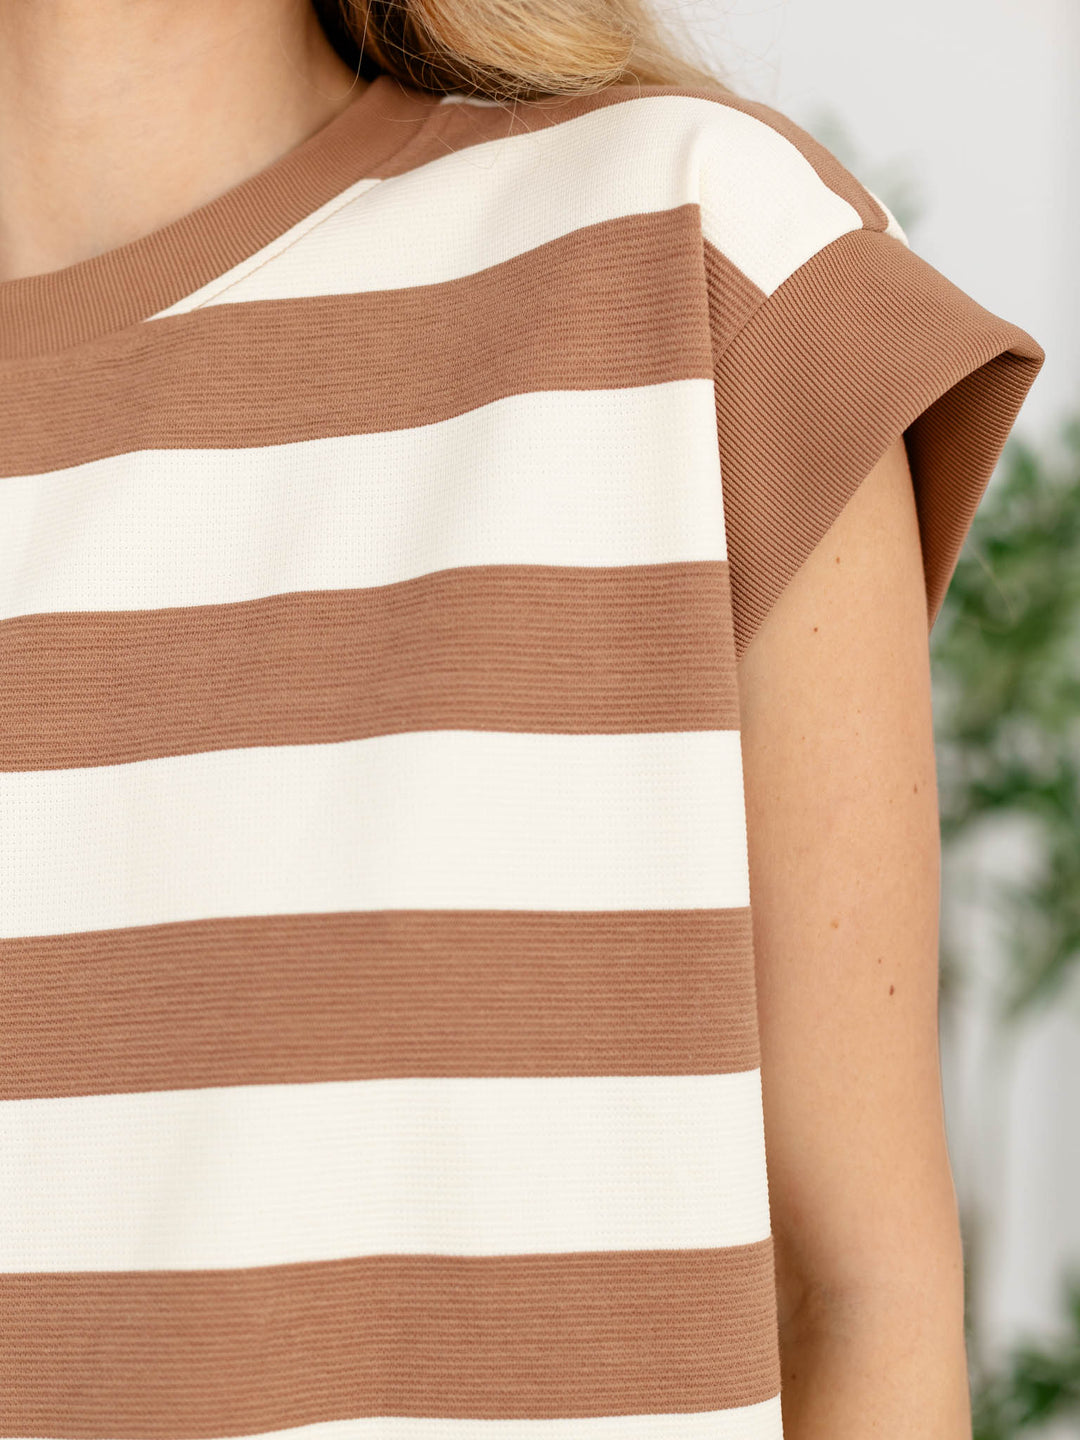 Stripe Sheath T-Shirt DressDress